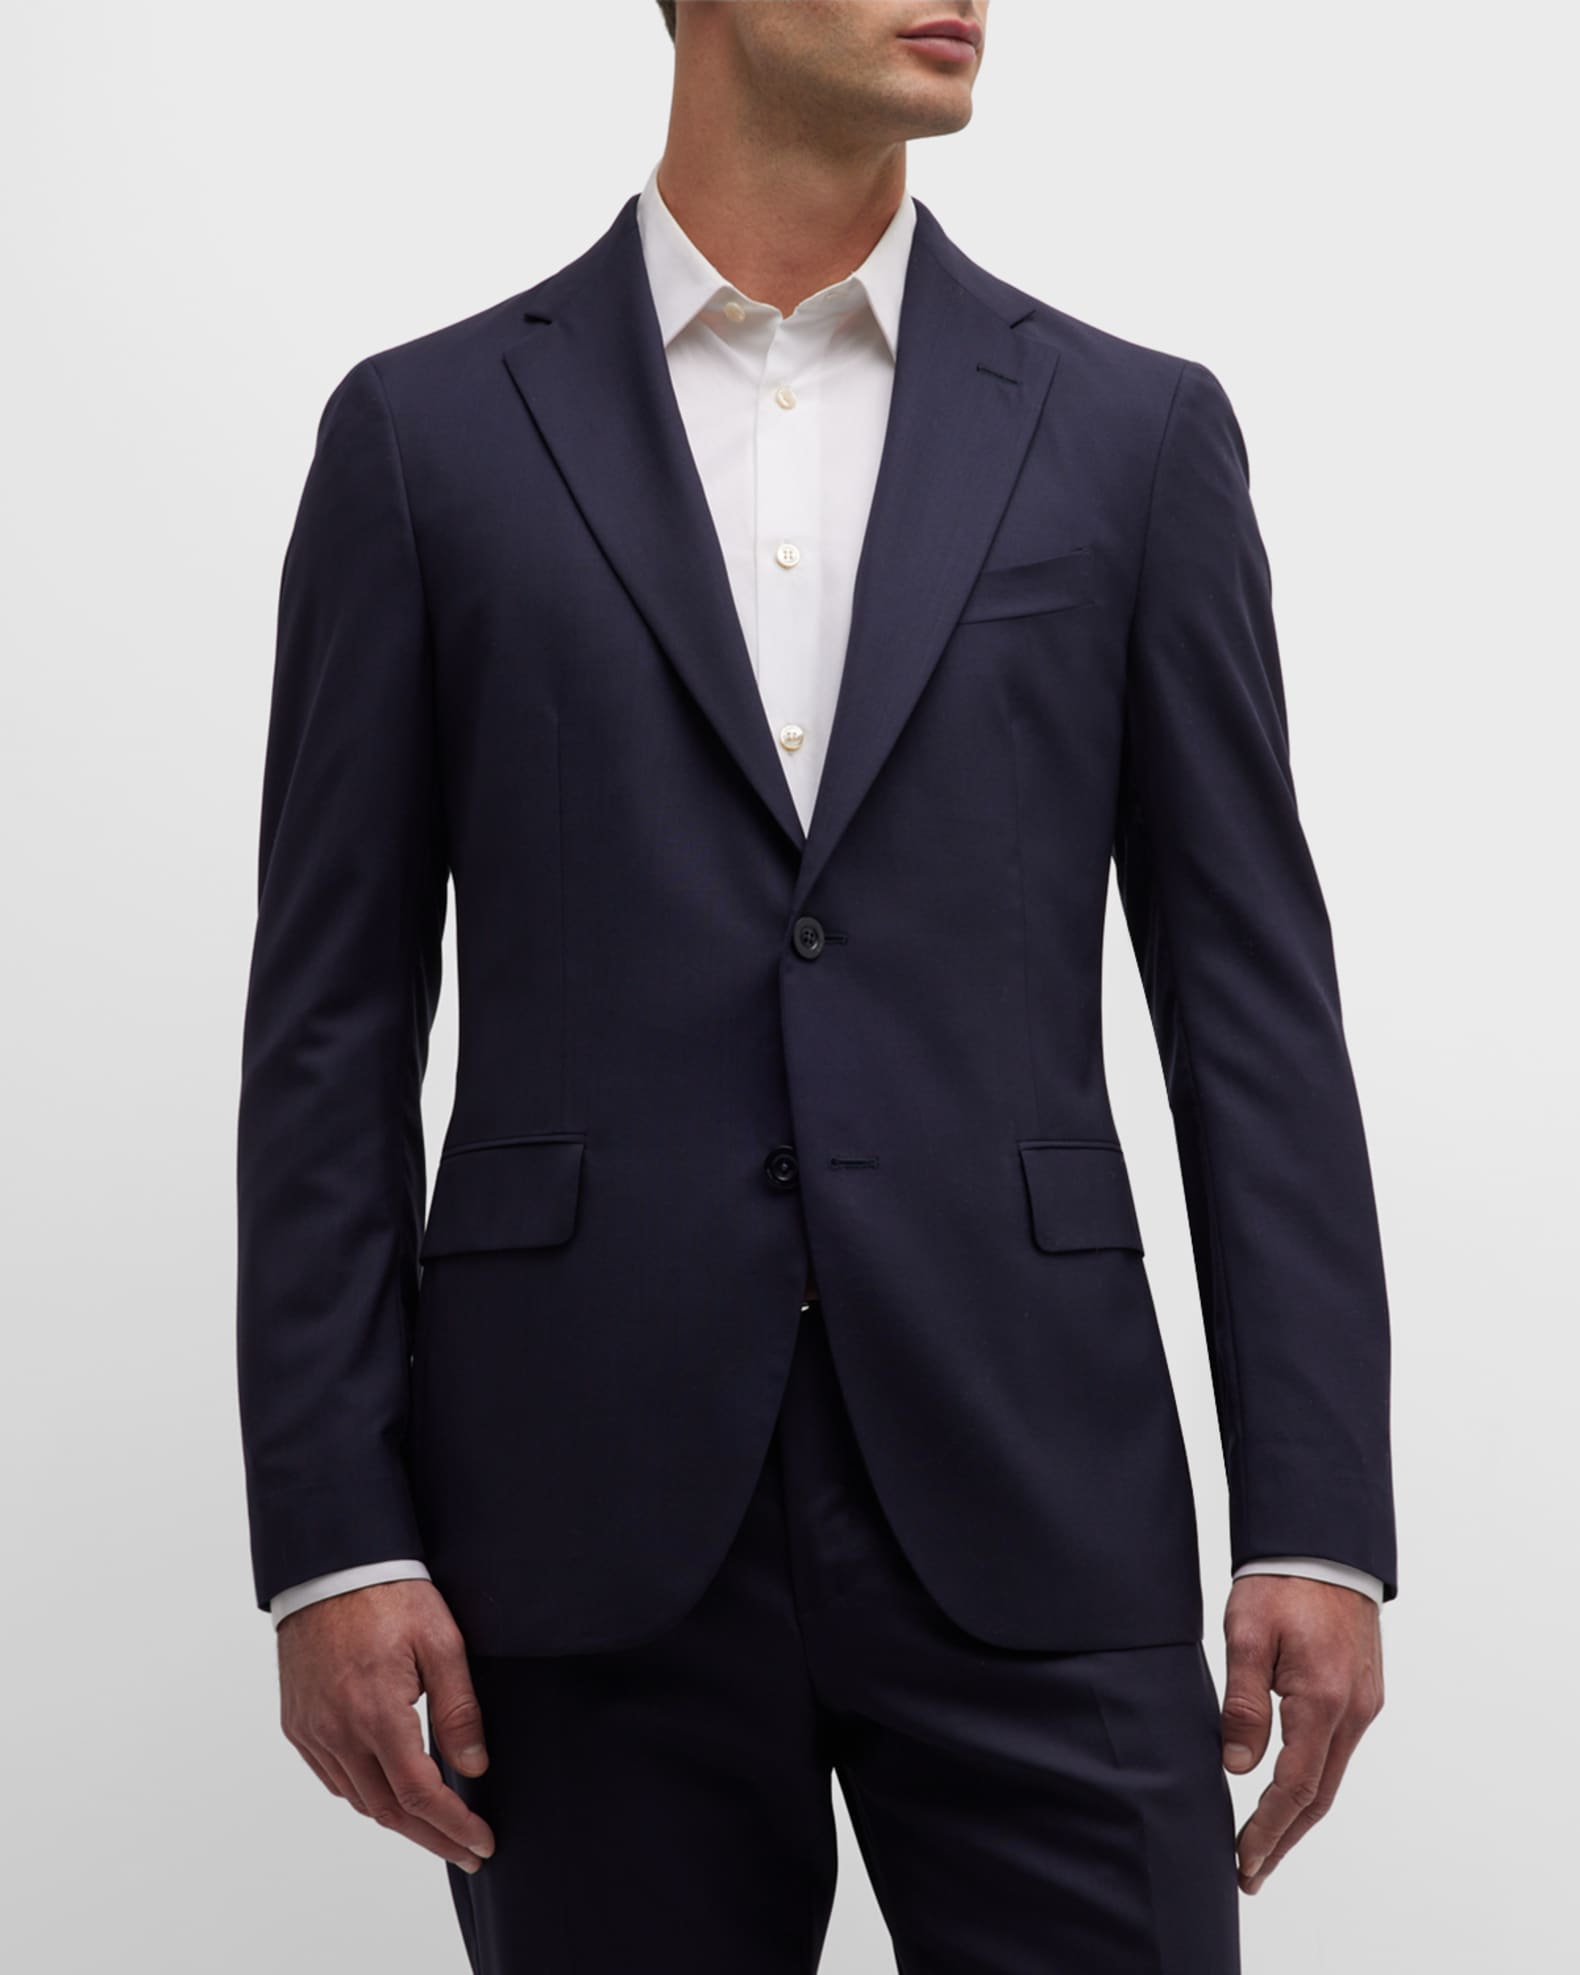 Boglioli Men's Solid Wool Suit | Neiman Marcus